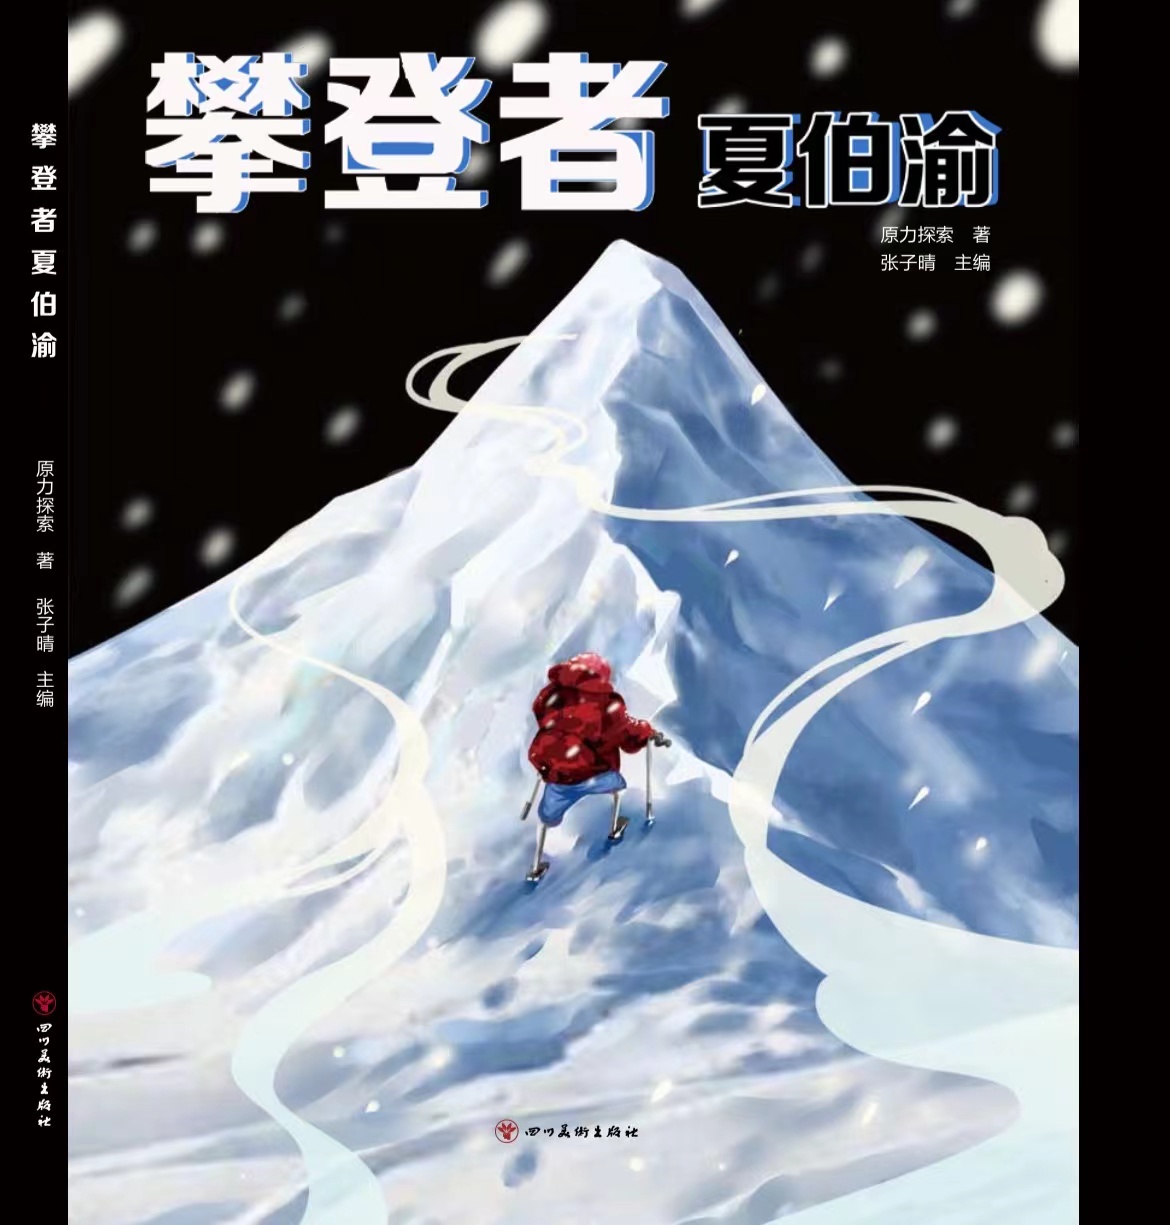 《攀登者夏伯渝》带你走进夏伯渝的攀登人生，一本让你有梦想的书